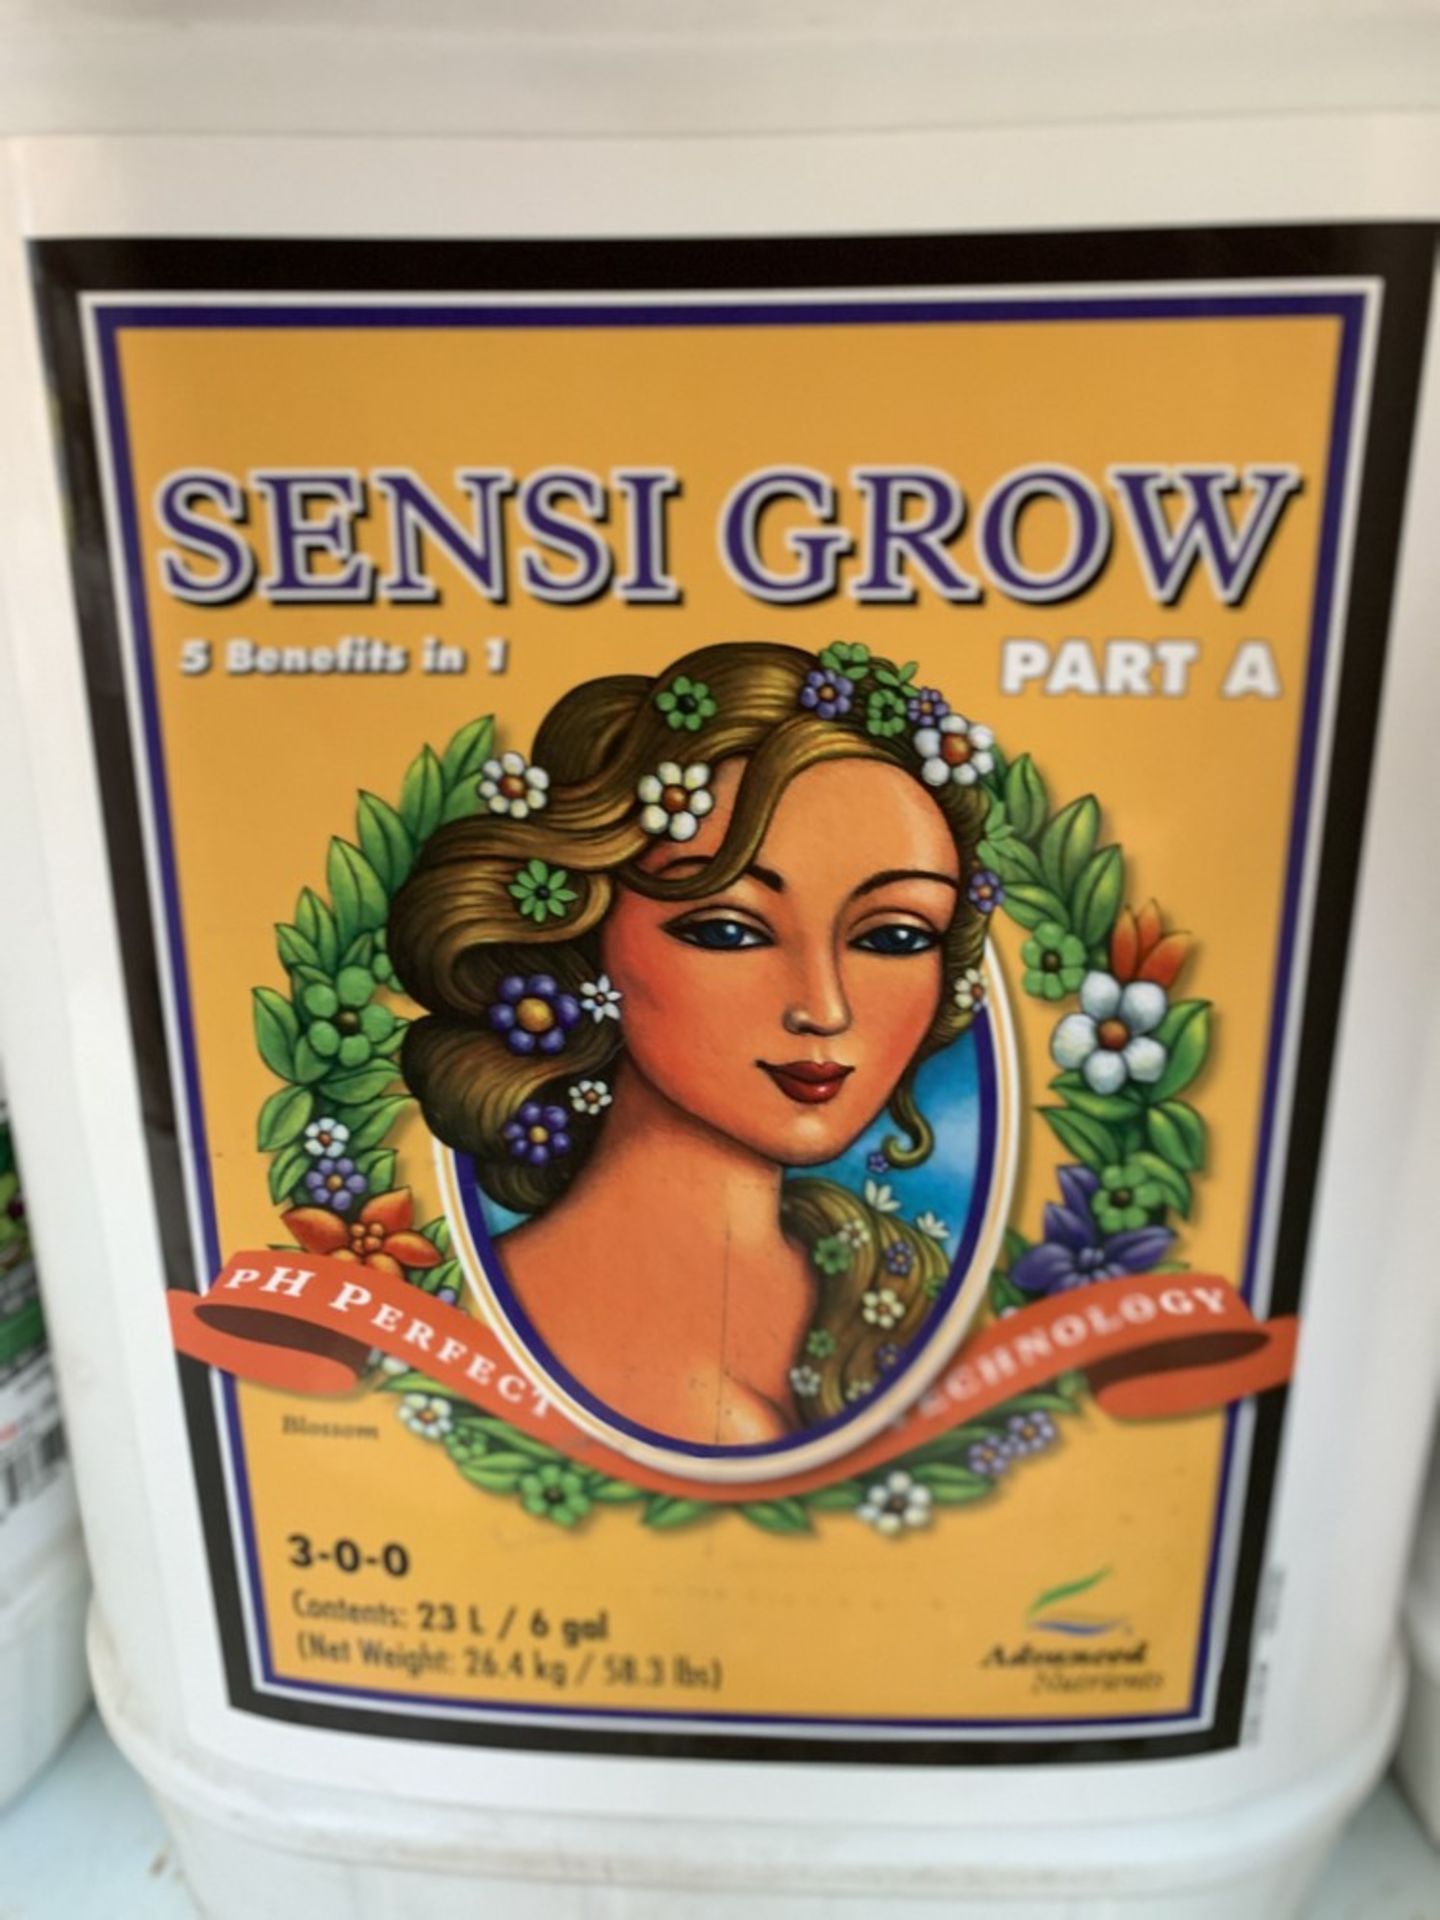 SENSI GROW Part A, 23L